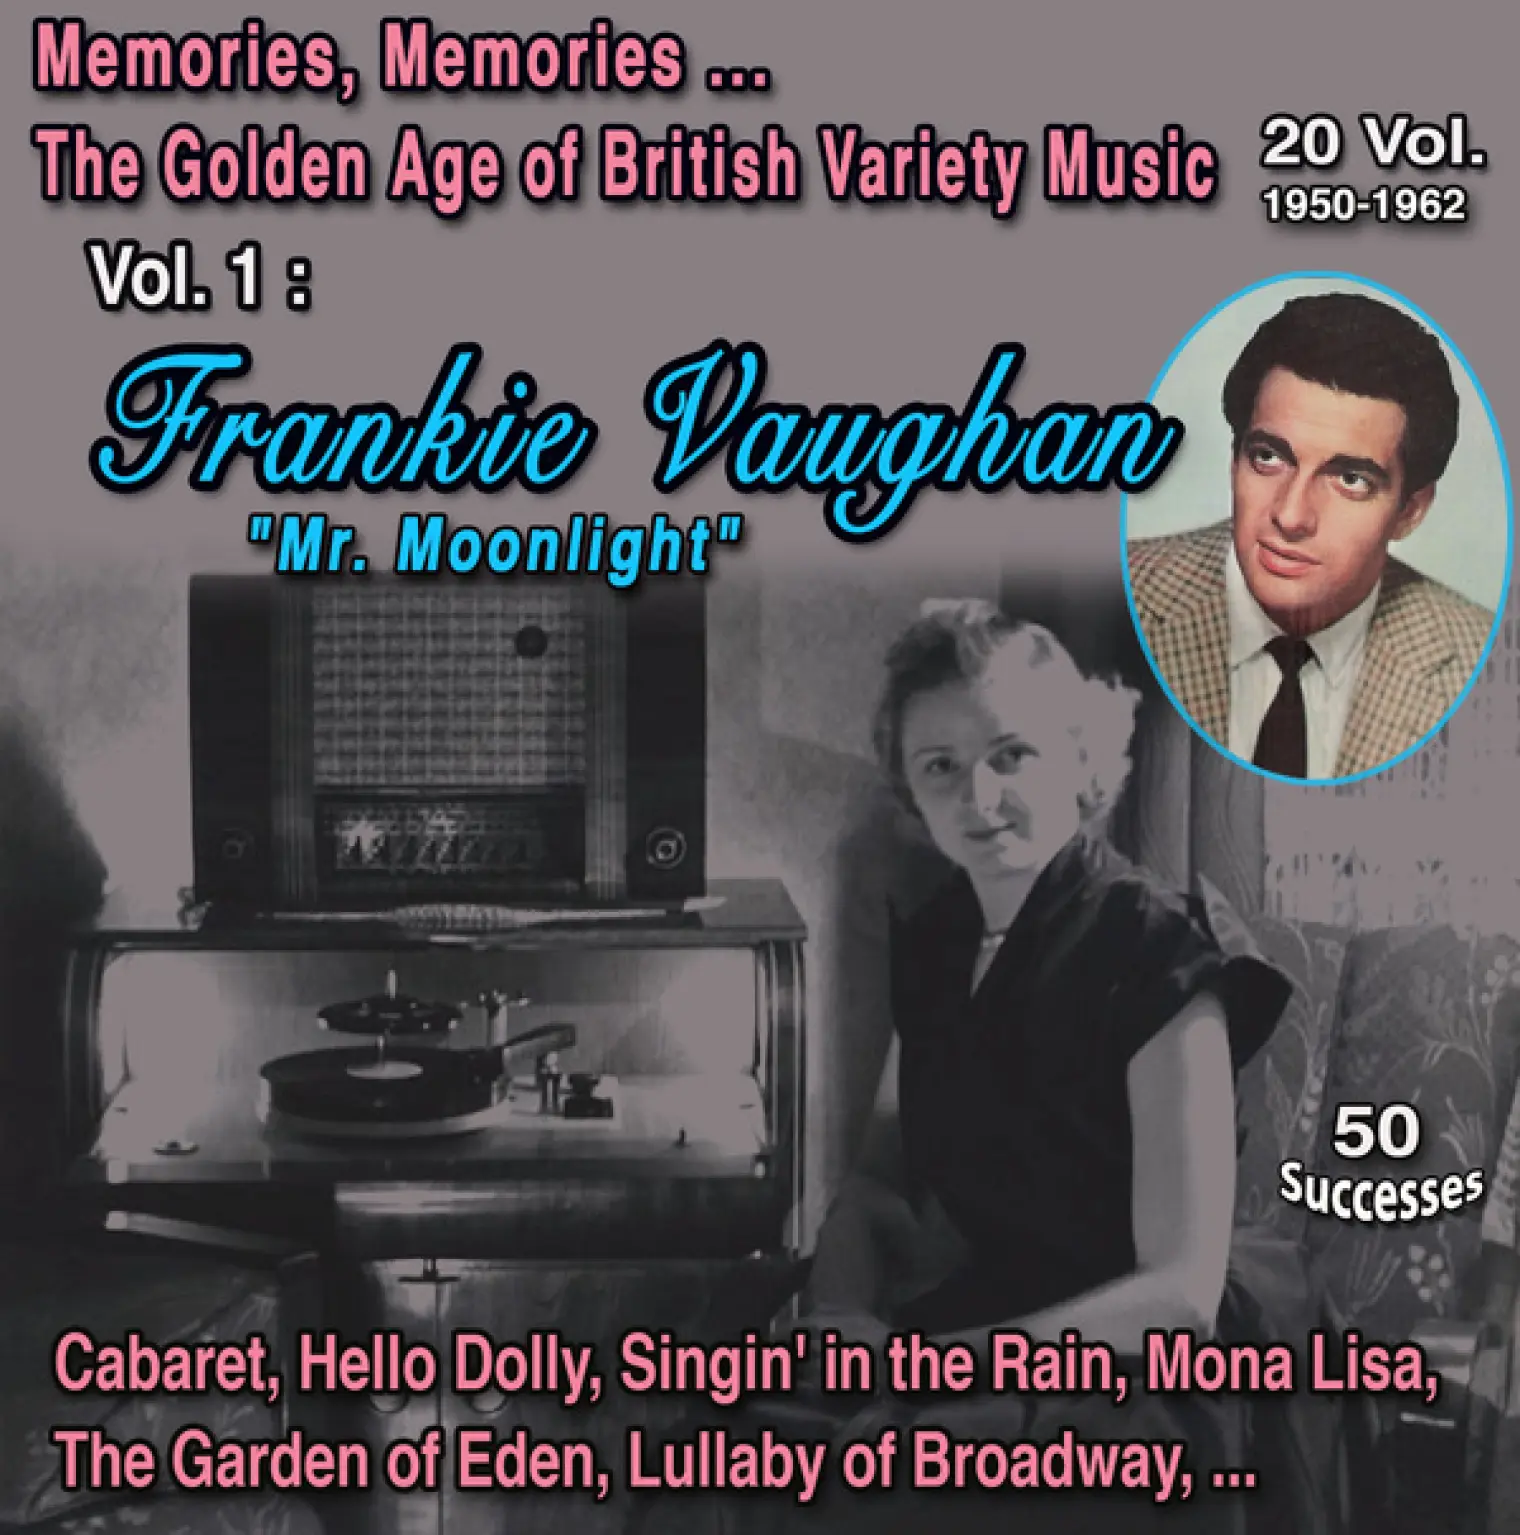 Memories, Memories... The Golden Age of British Variety Music 20 Vol. 1950-1962 Vol. 1 : Frankie Vaughan "Mr. Moonlight" (50 Successes) -  Frankie Vaughan 